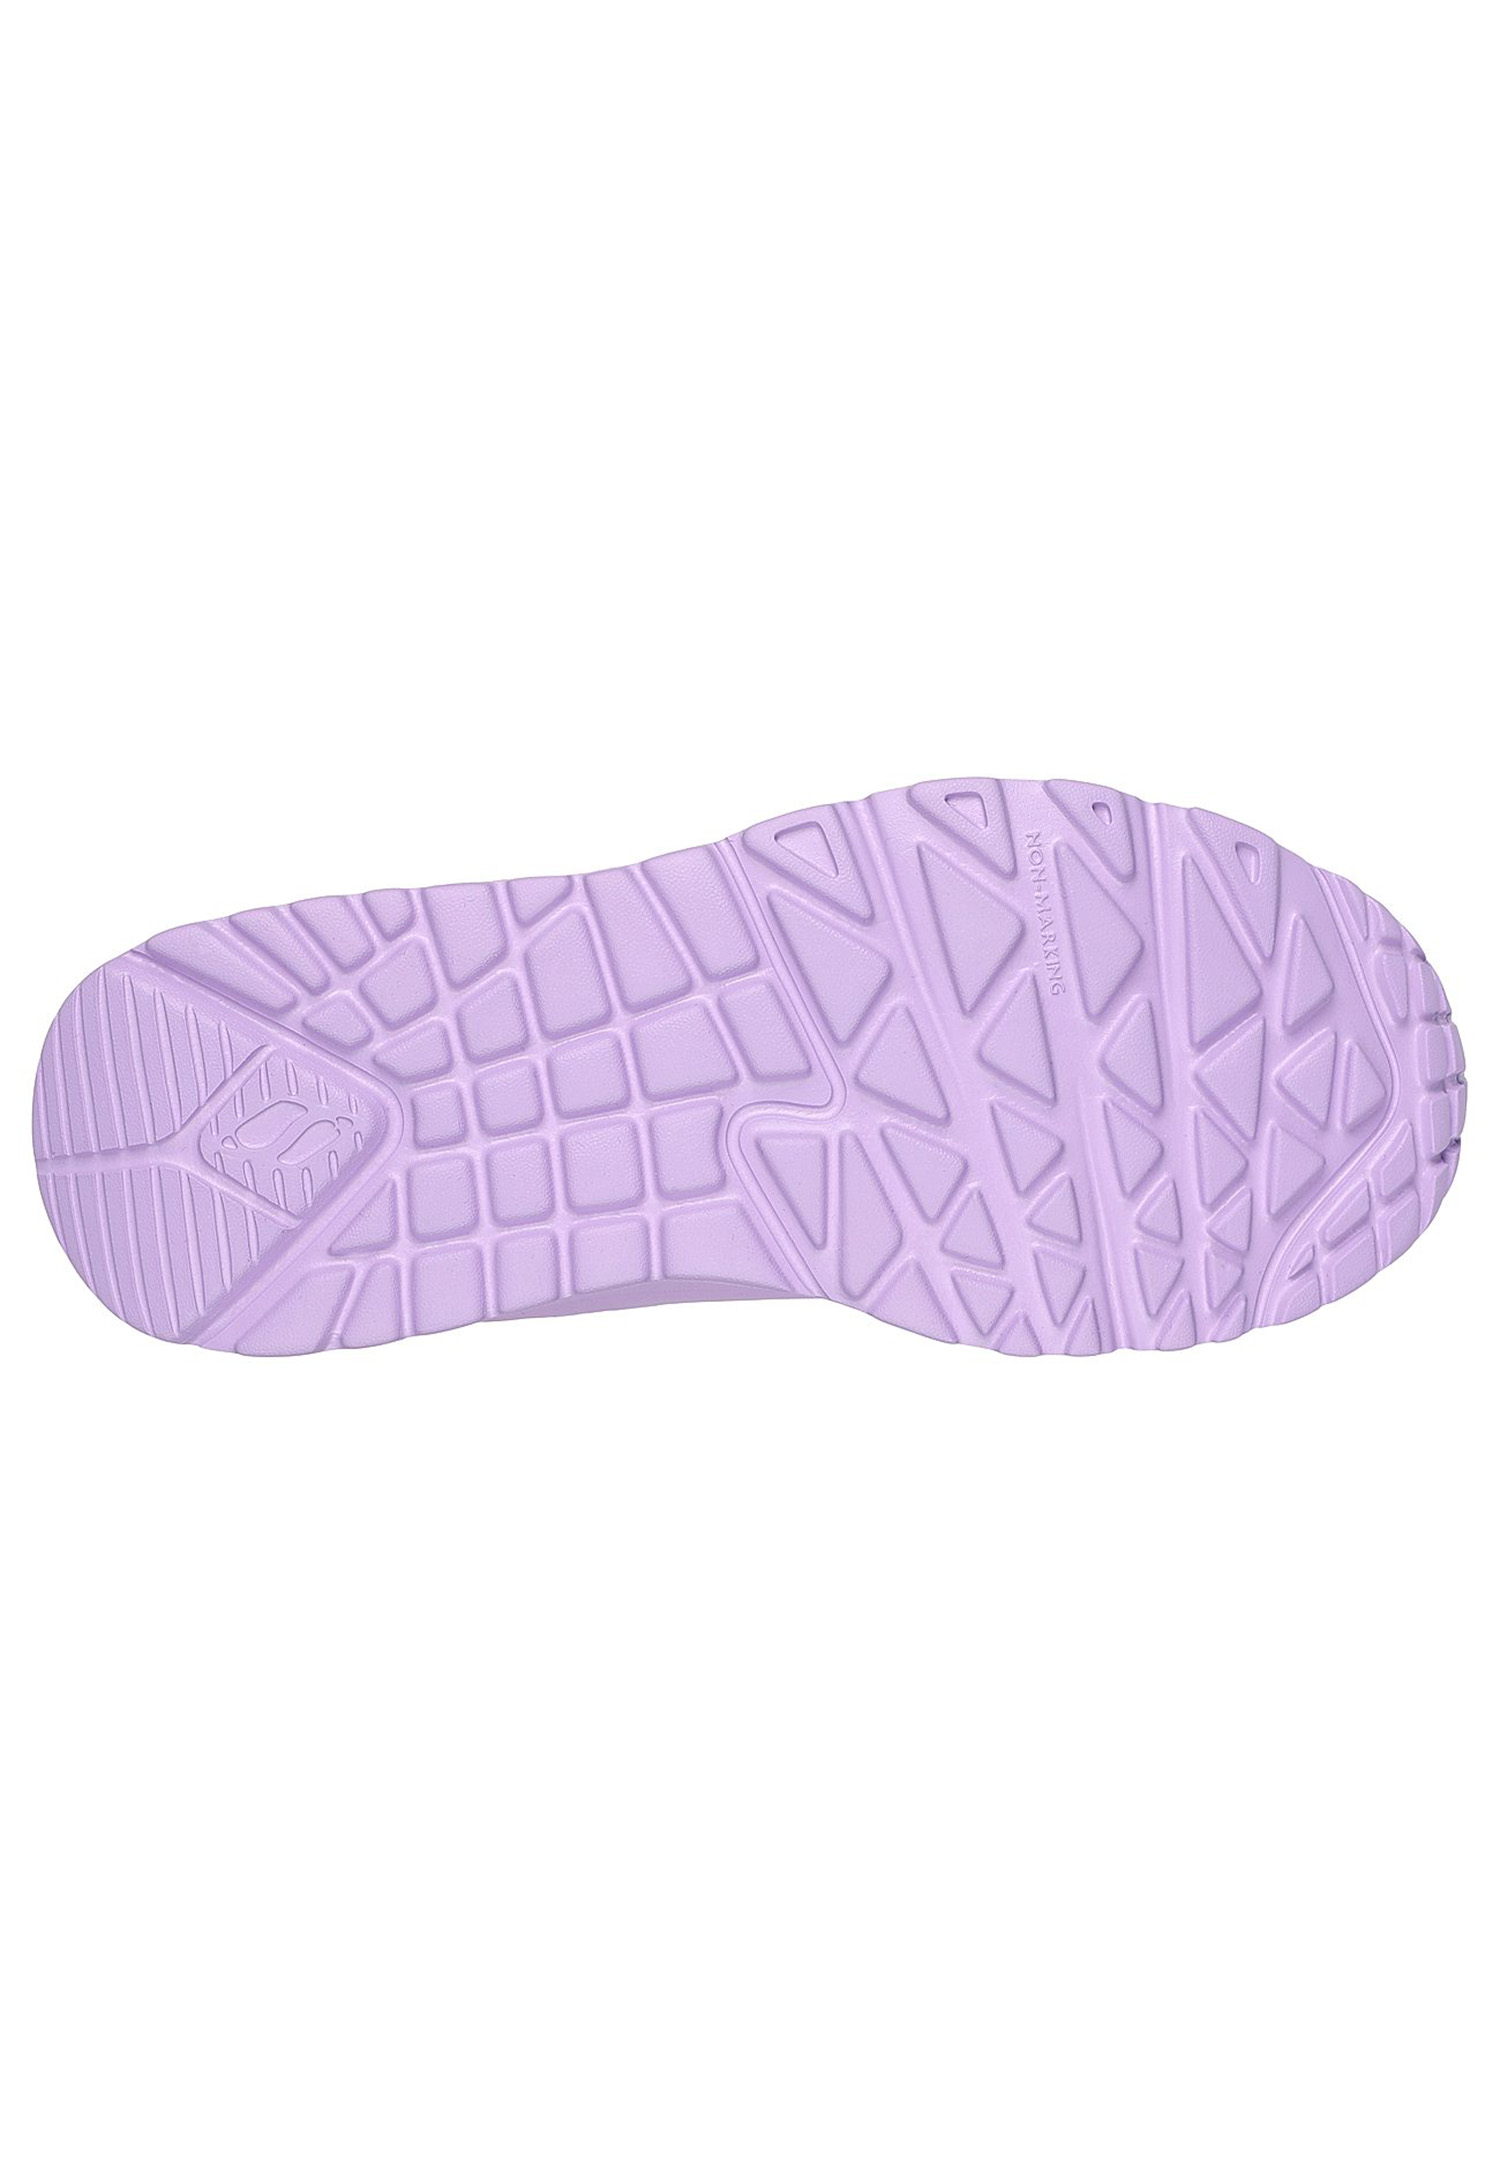 Skechers Kids UNO LITE Sneaker 310451L LAV violett